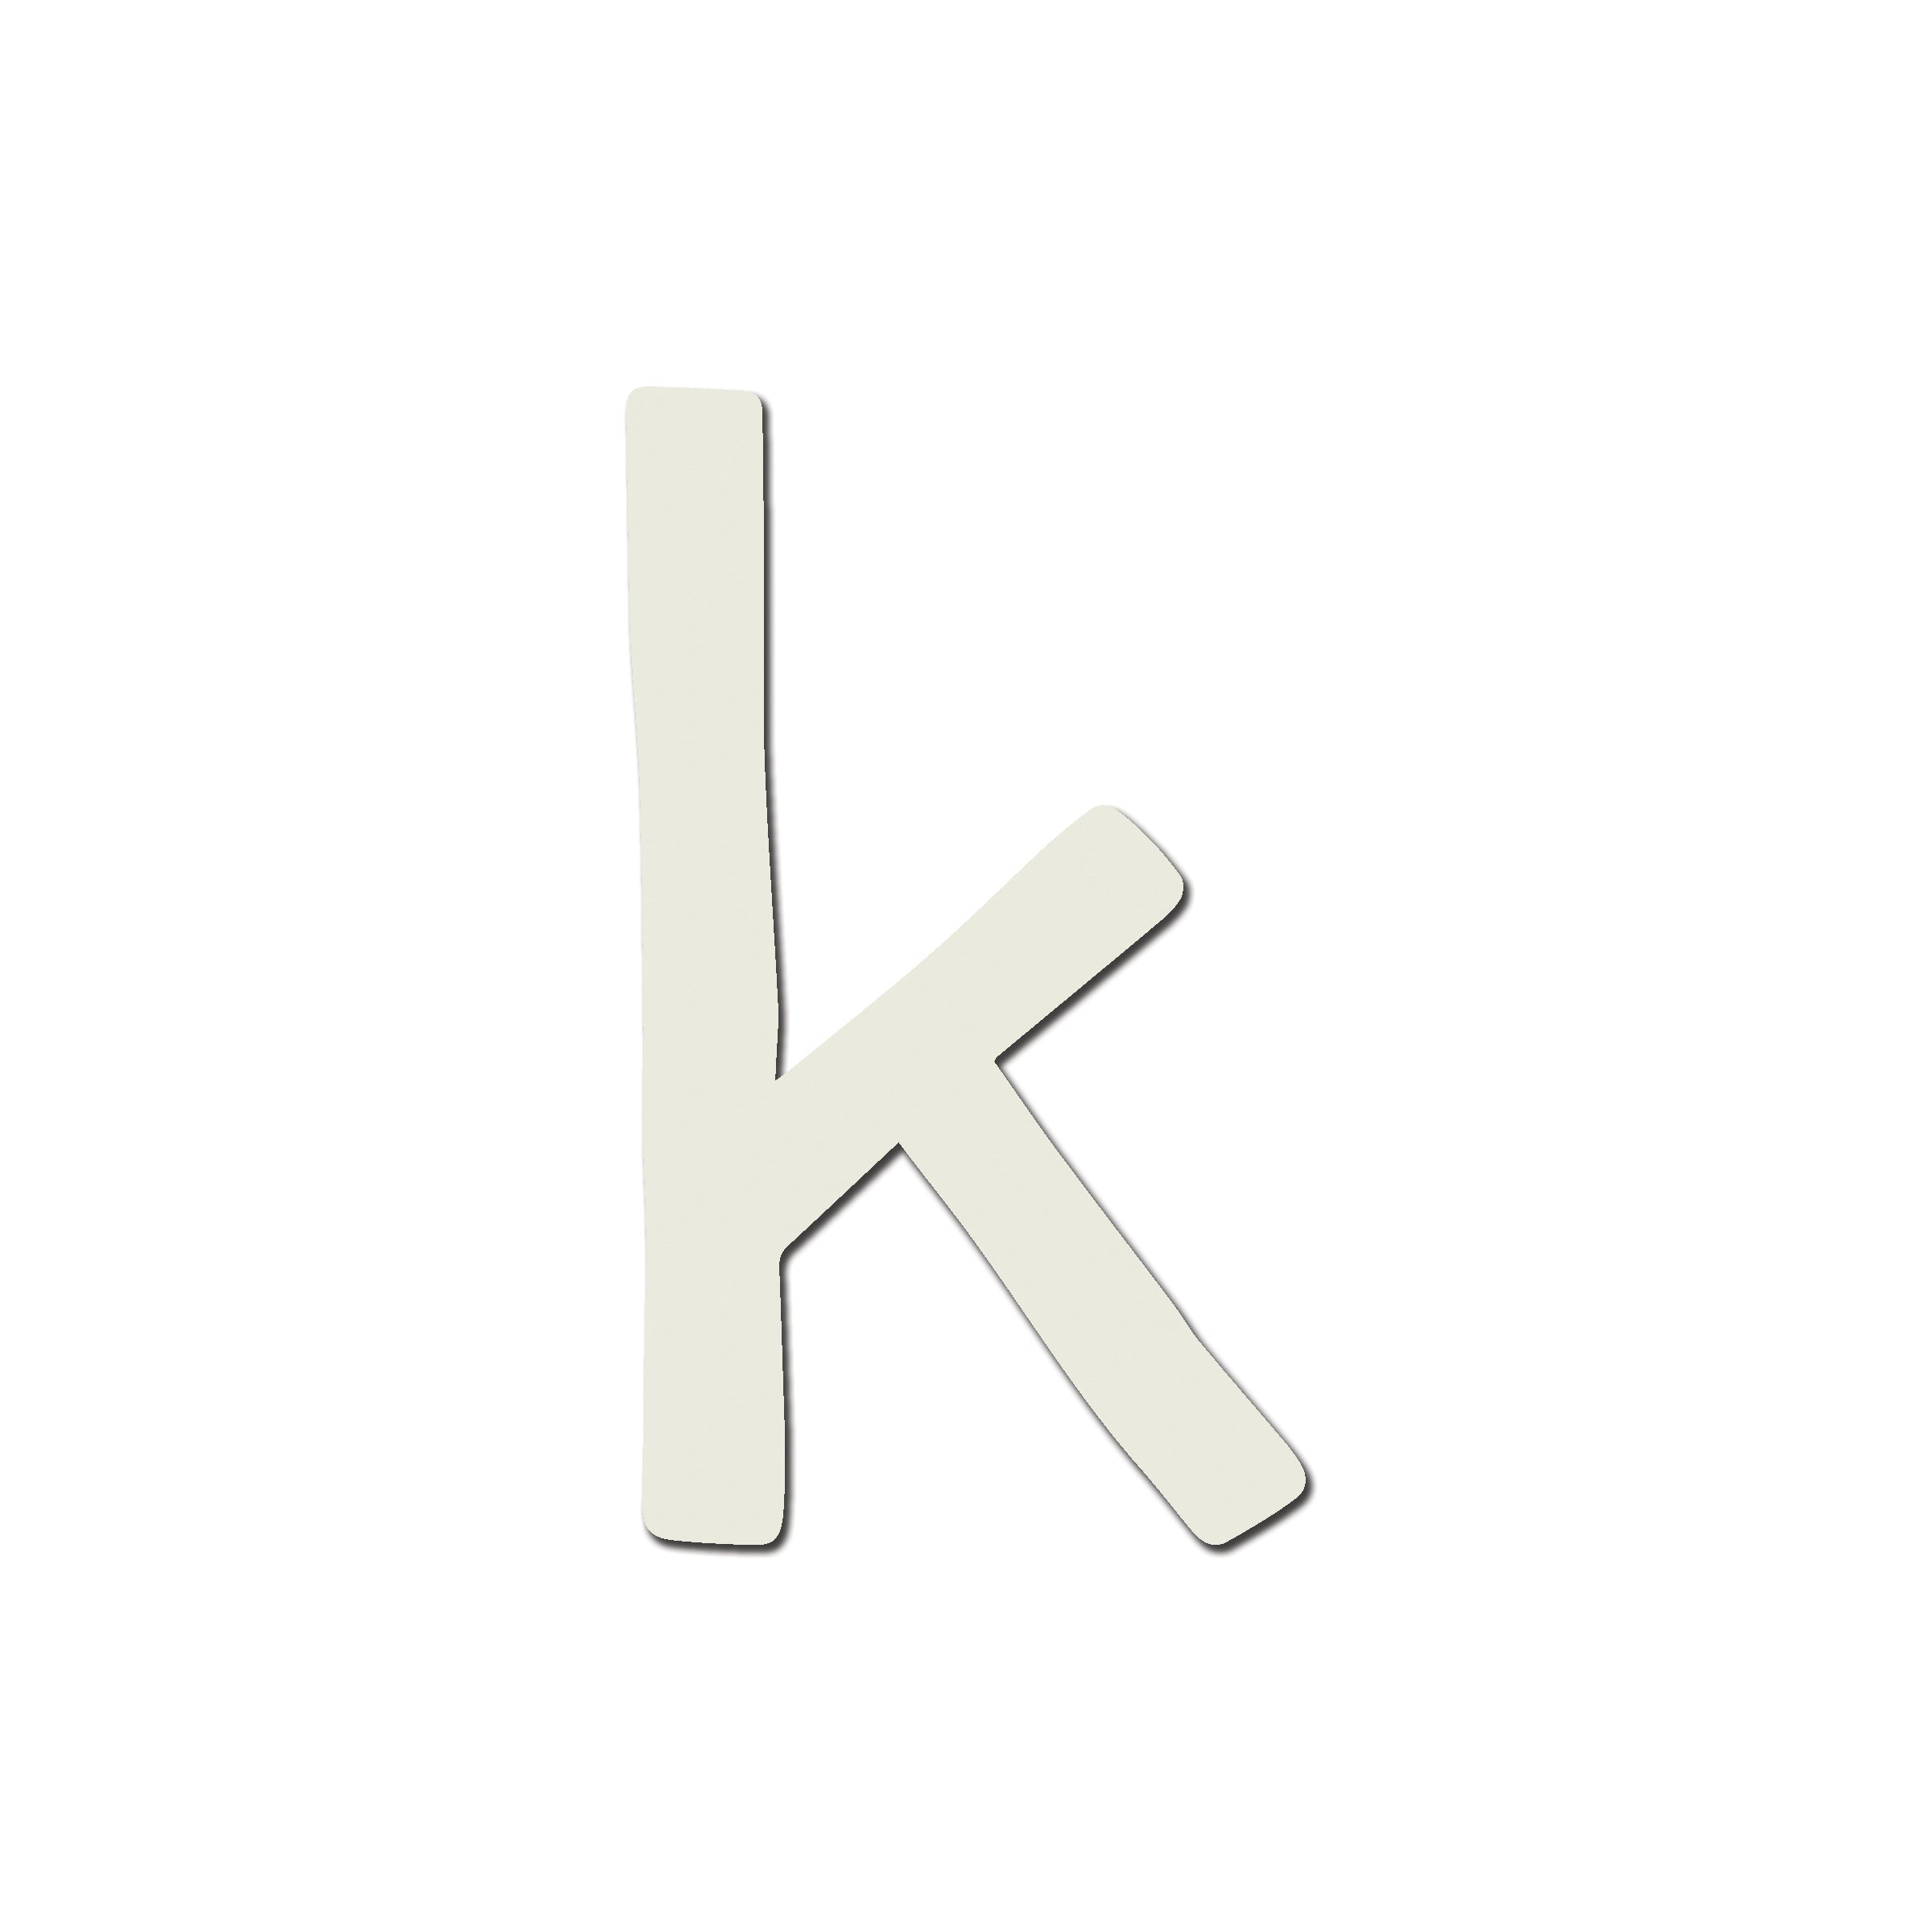 K Block Letters